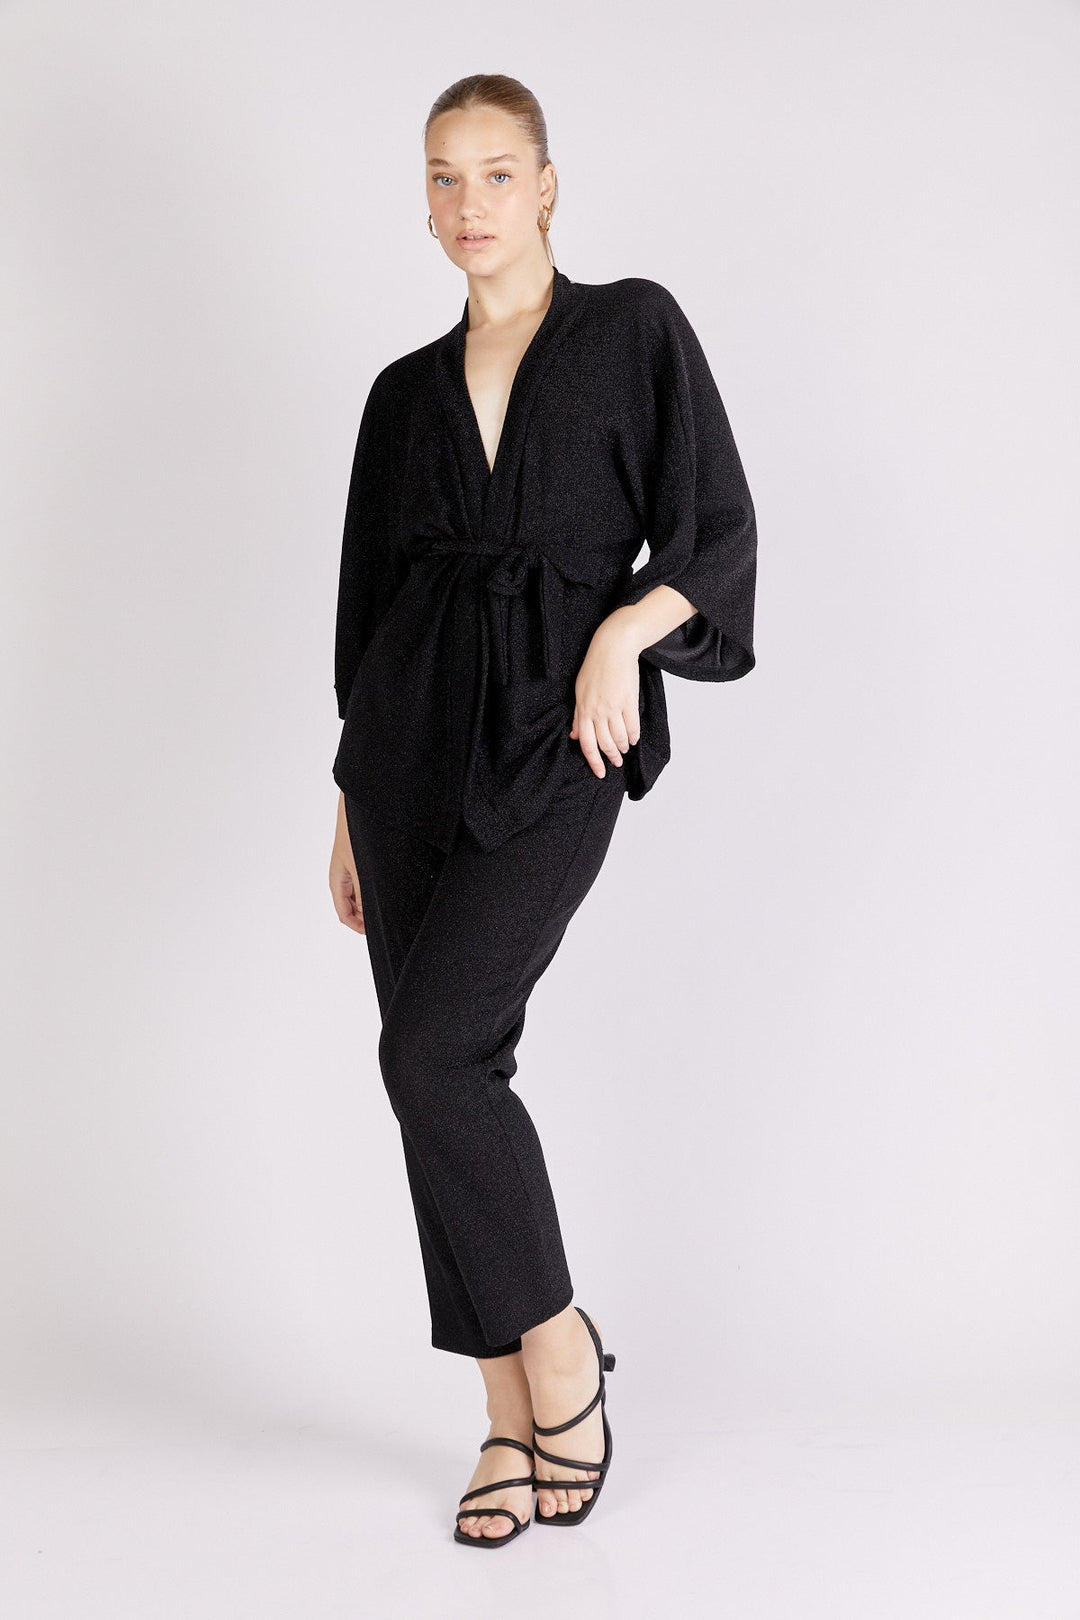 מכנסי רויאל בצבע שחור לורקס - Neta Efrati